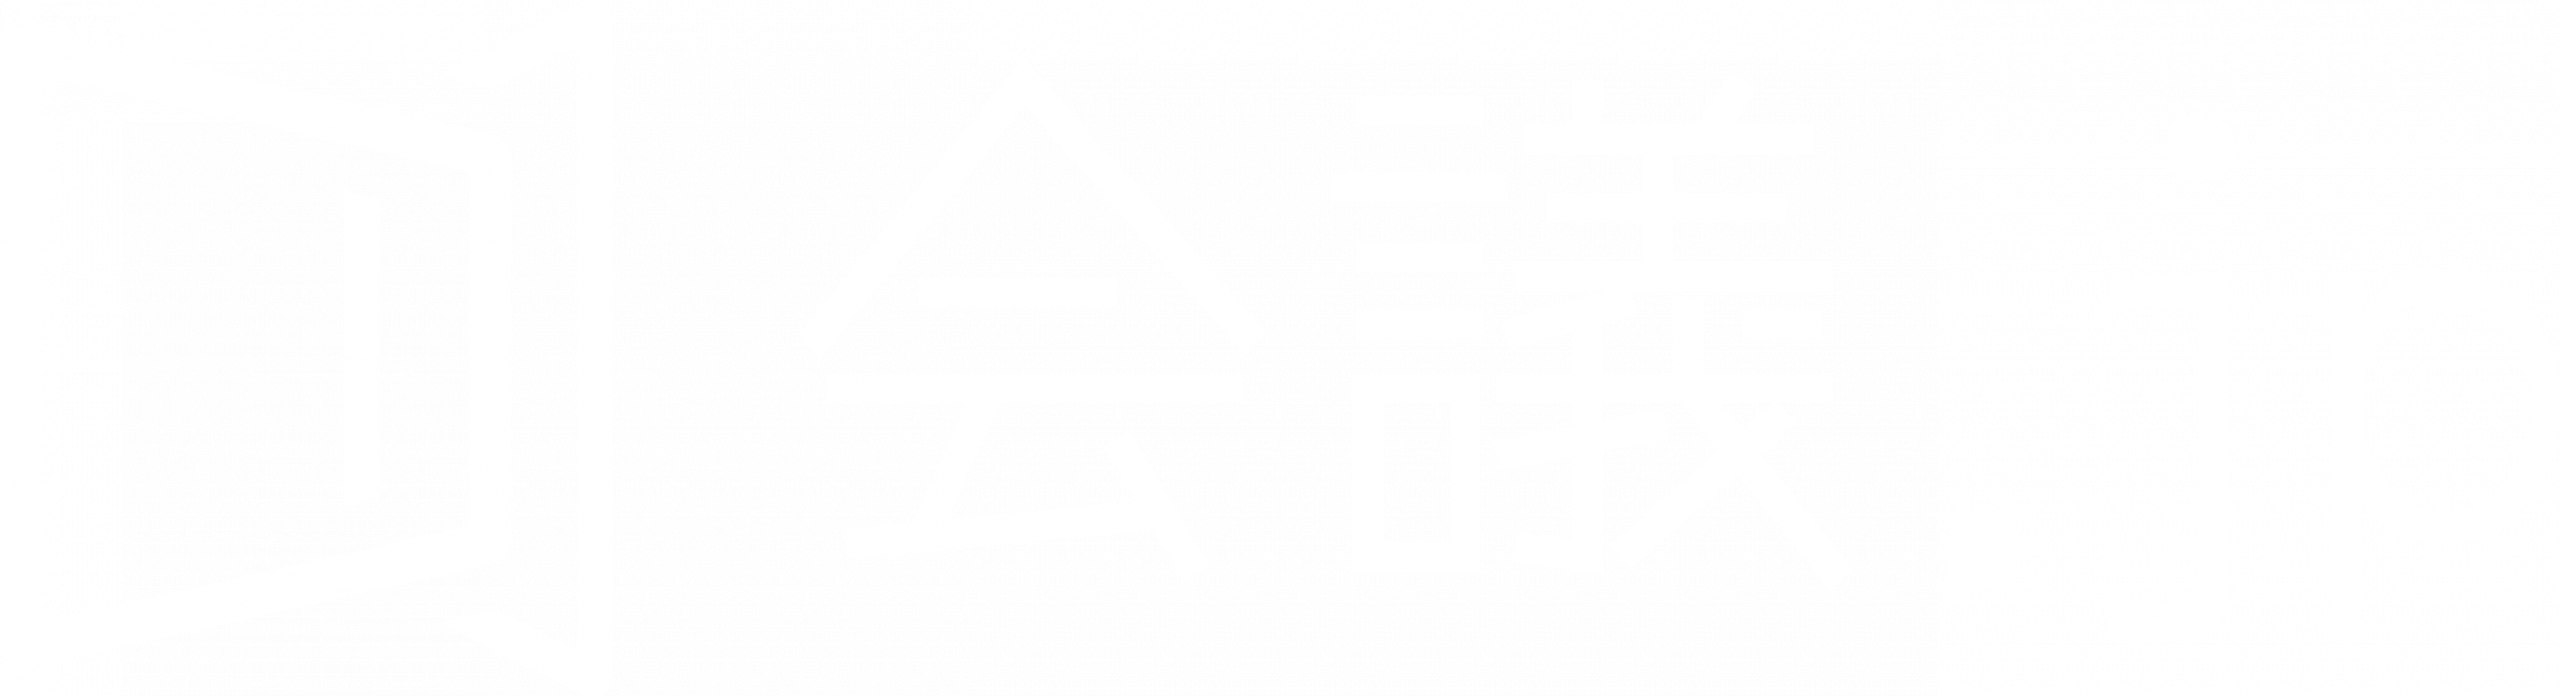 かんたん画面共有・オンライン会議システム | 会議.jp